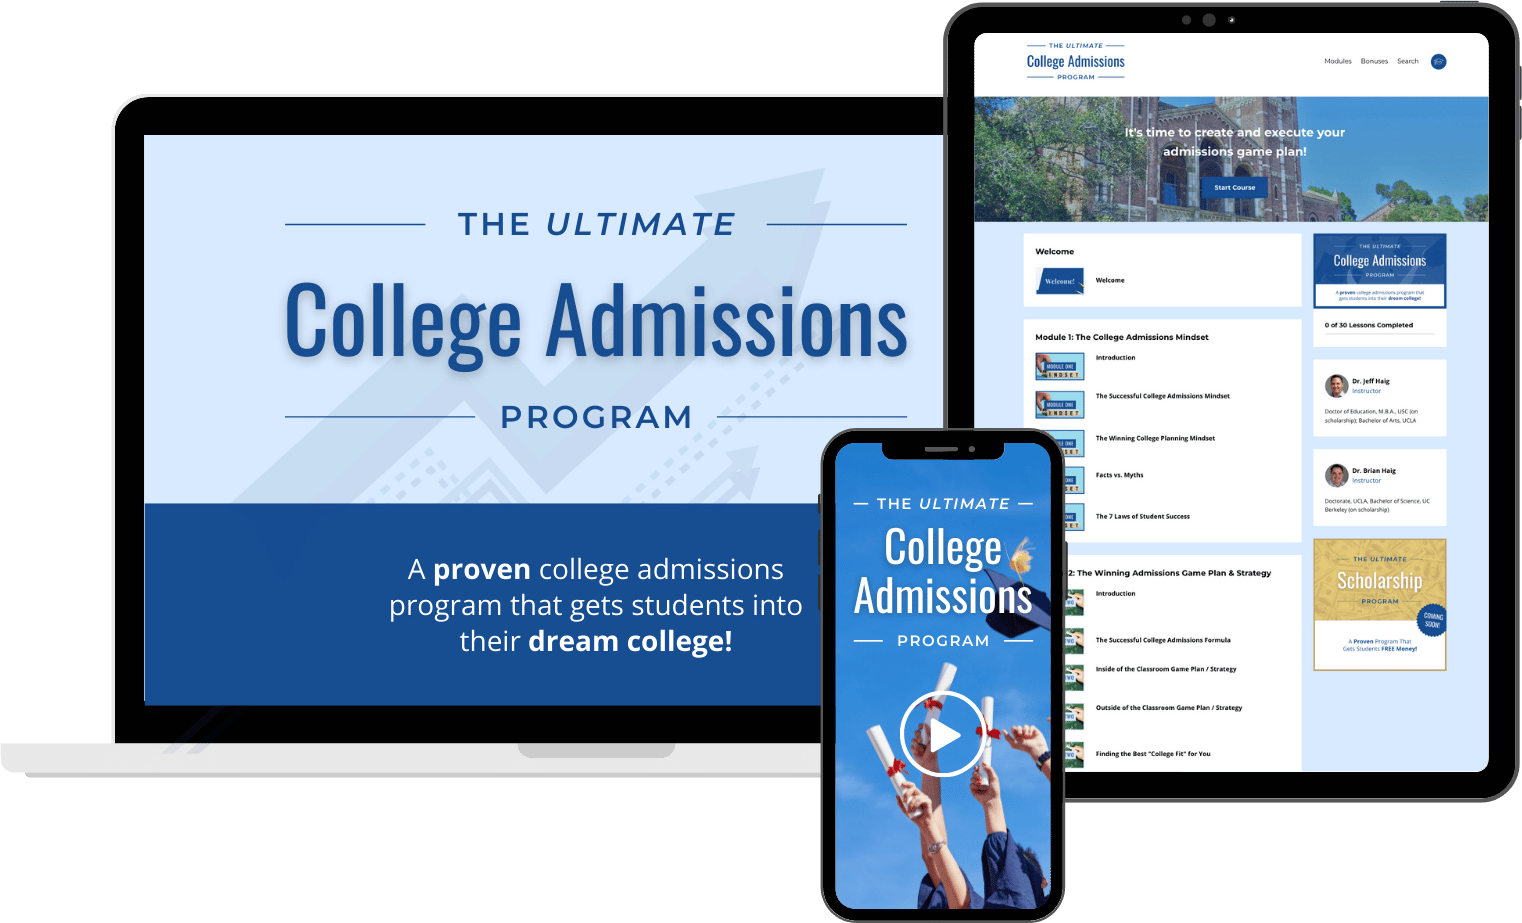 College admissions program